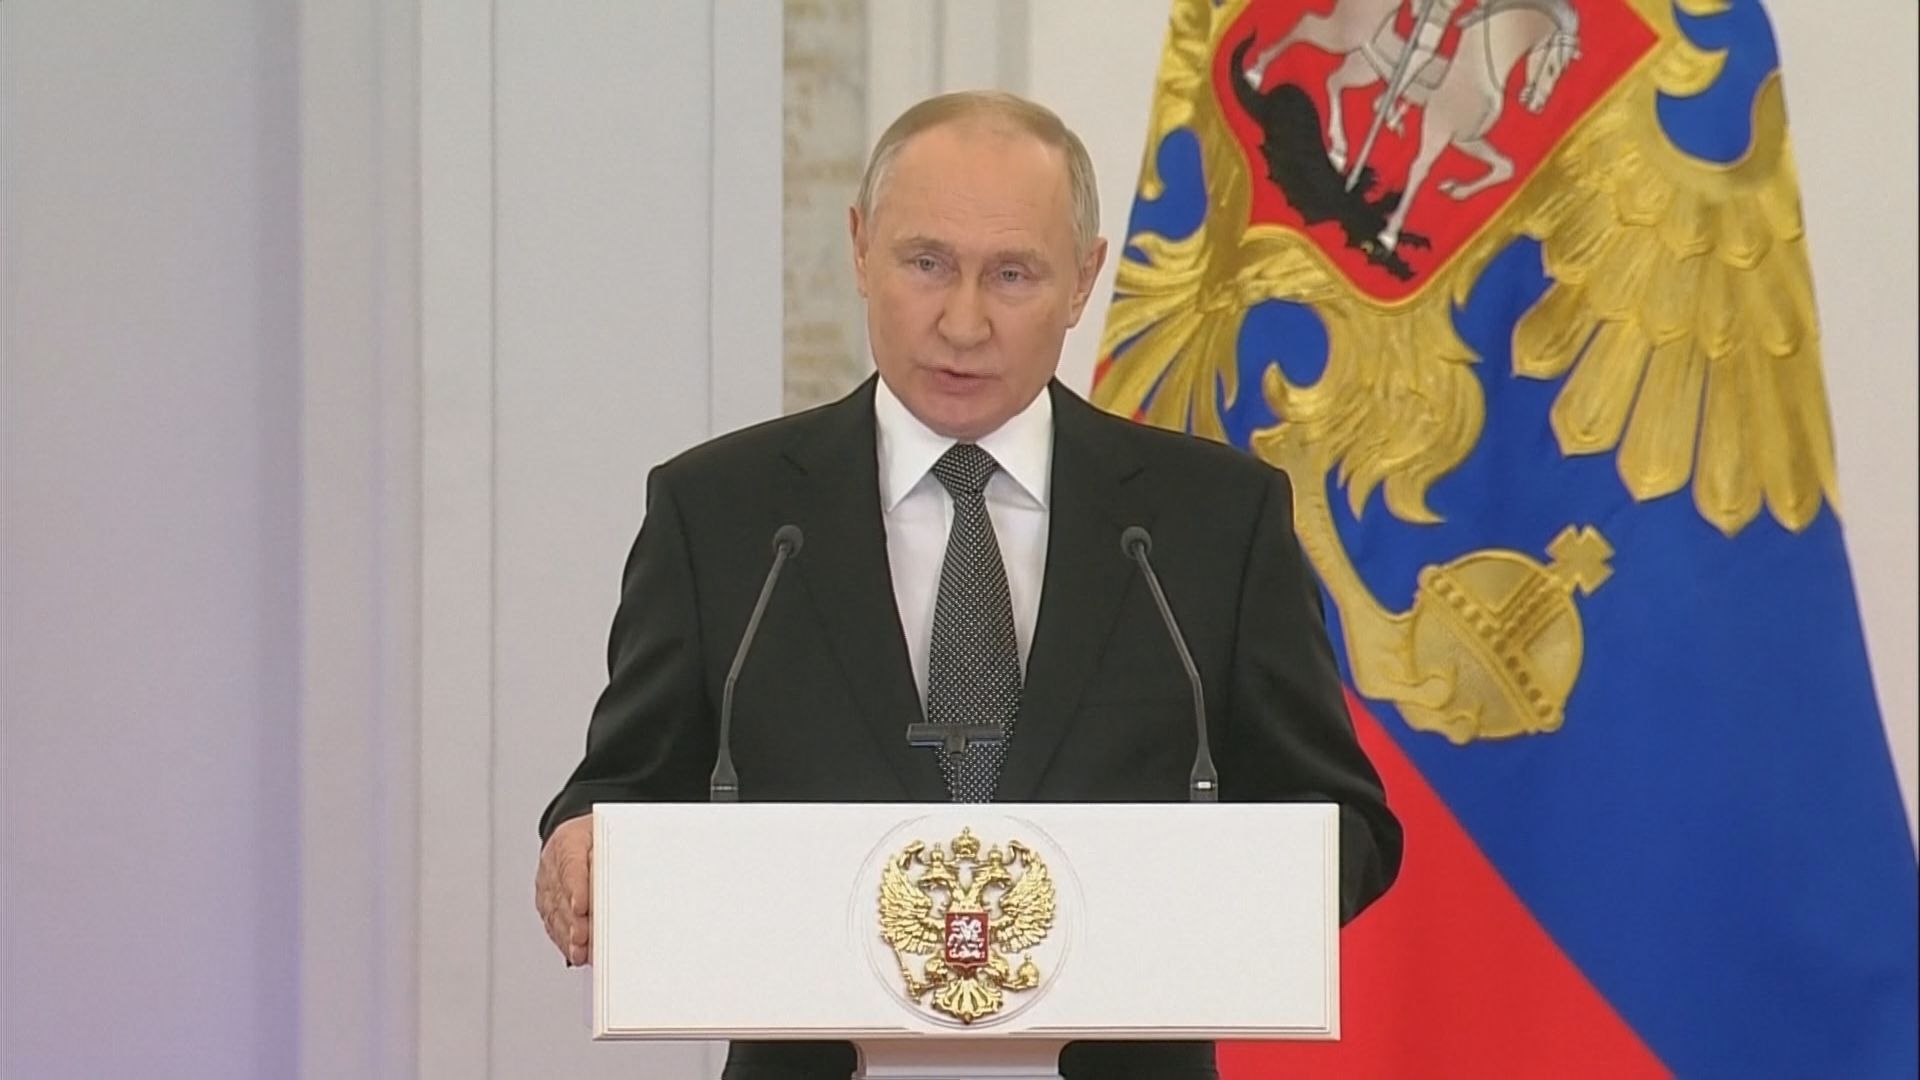 プーチン大統領 来年3月の大統領選への出馬の意向を表明 通算5期目に向け